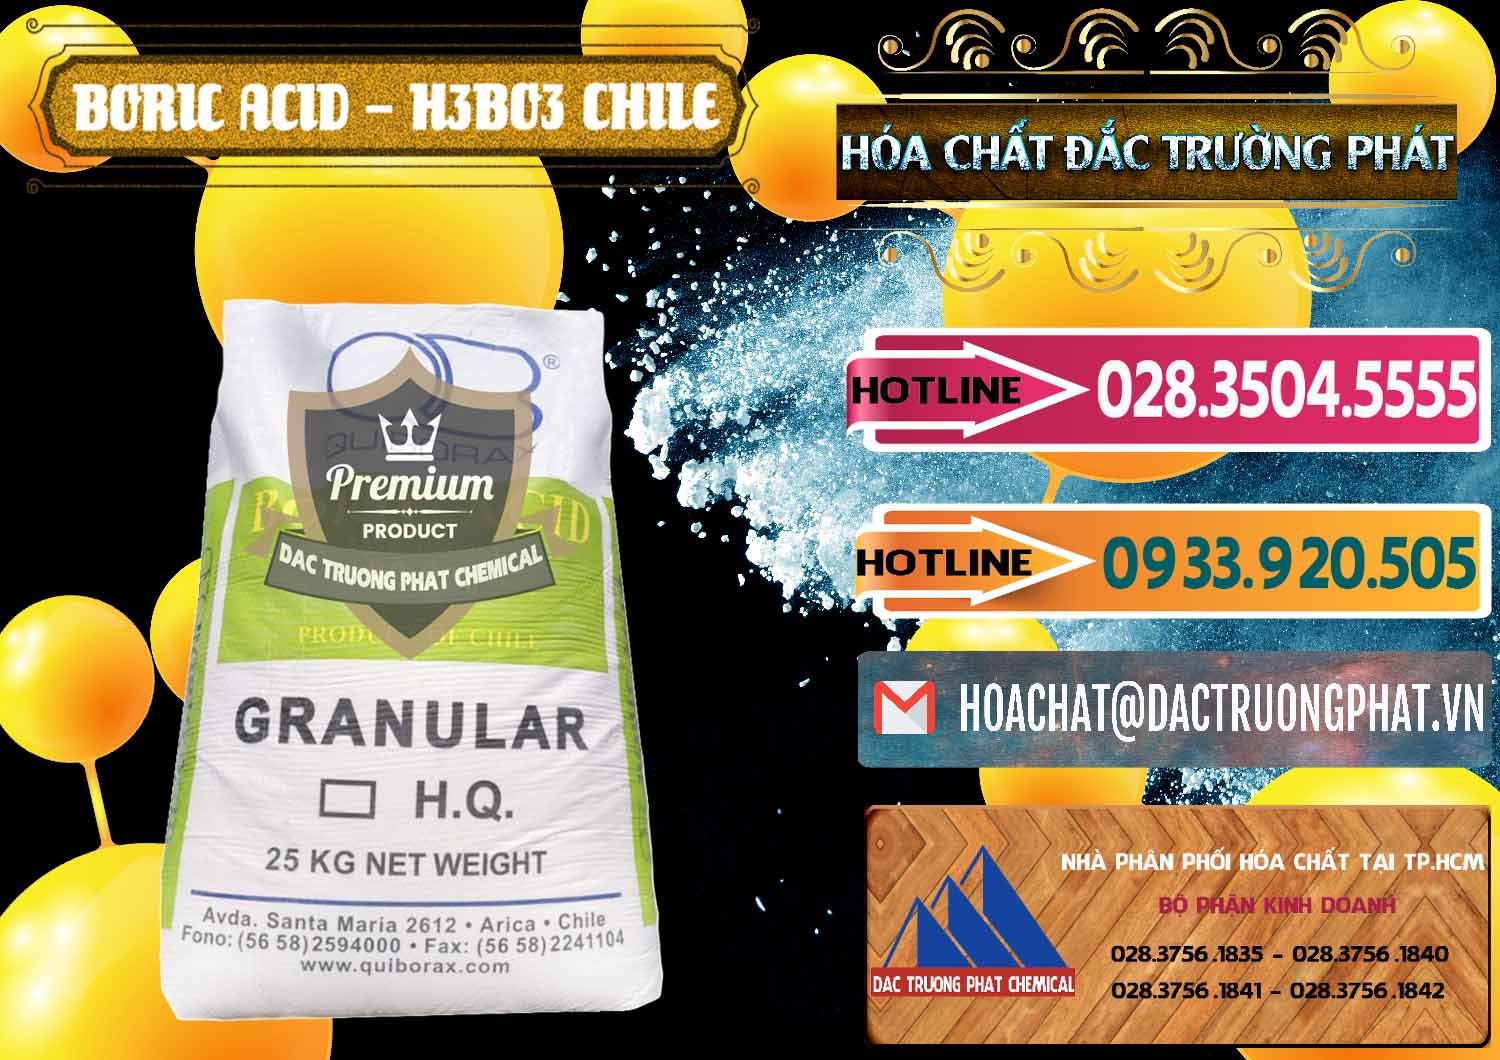 Đơn vị cung ứng & bán Acid Boric – Axit Boric H3BO3 99% Quiborax Chile - 0281 - Cung cấp ( nhập khẩu ) hóa chất tại TP.HCM - dactruongphat.vn